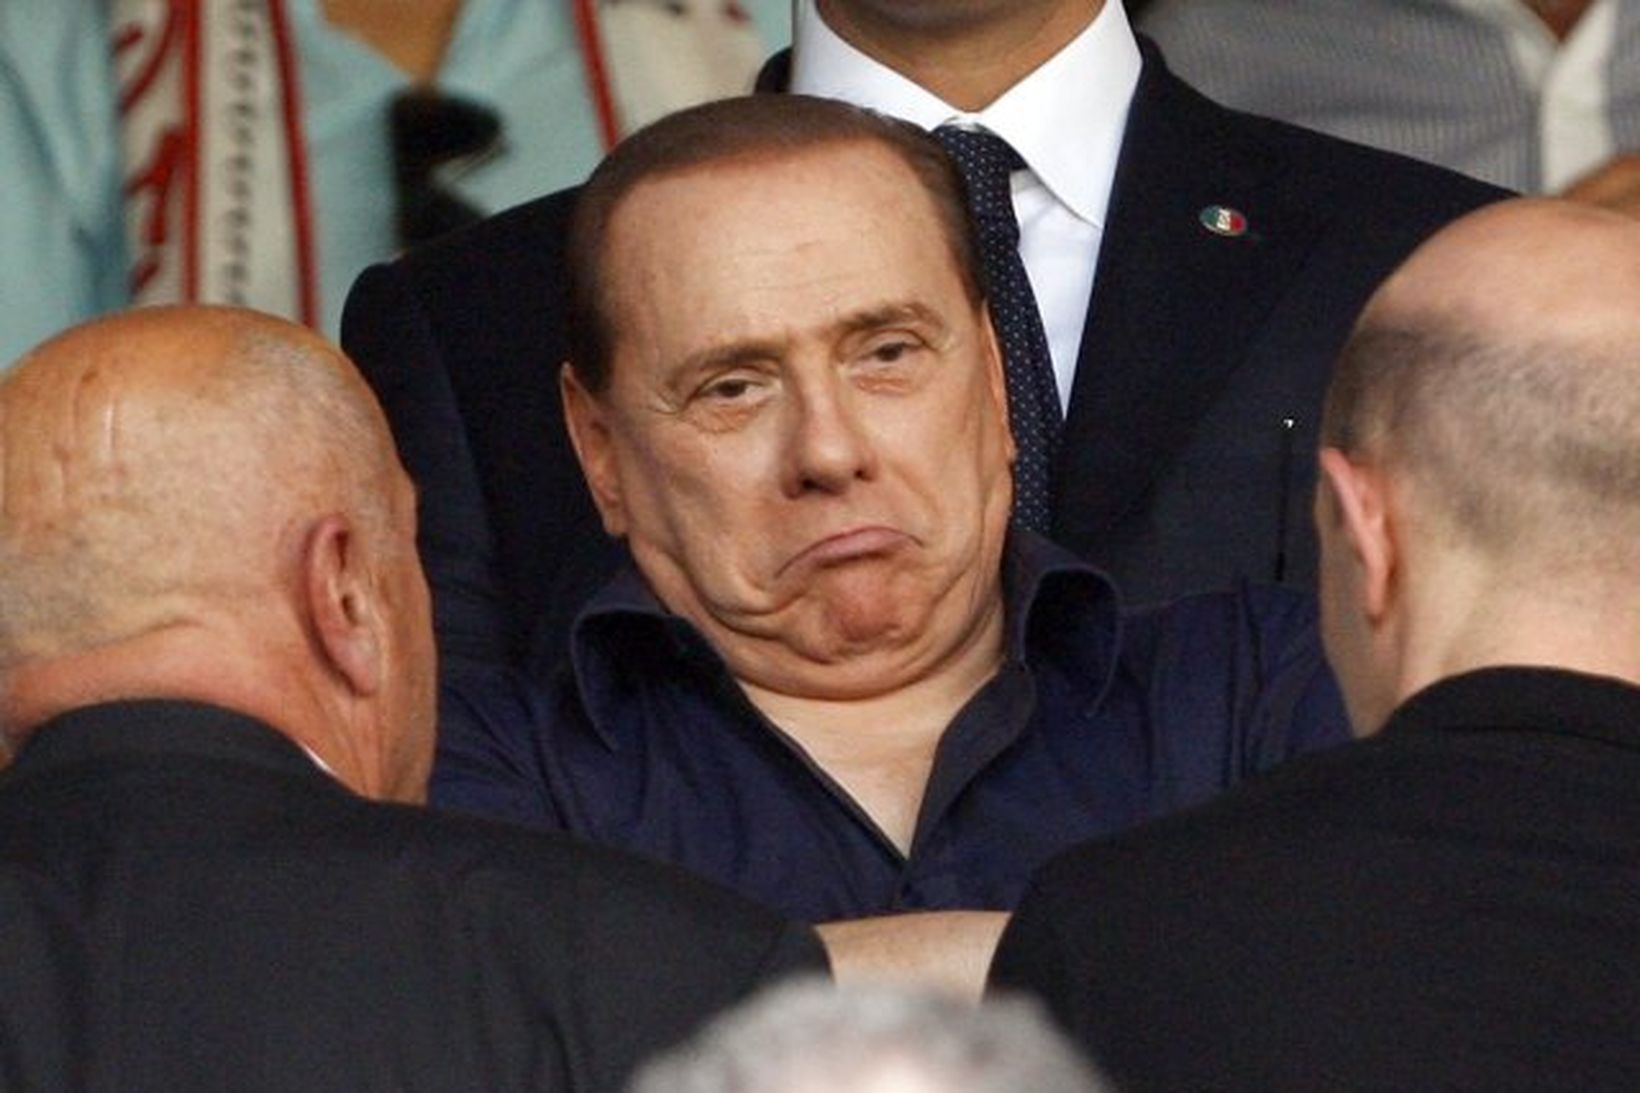 Silvio Berlusconi segist aldrei hafa greitt konum fyrir kynlíf.